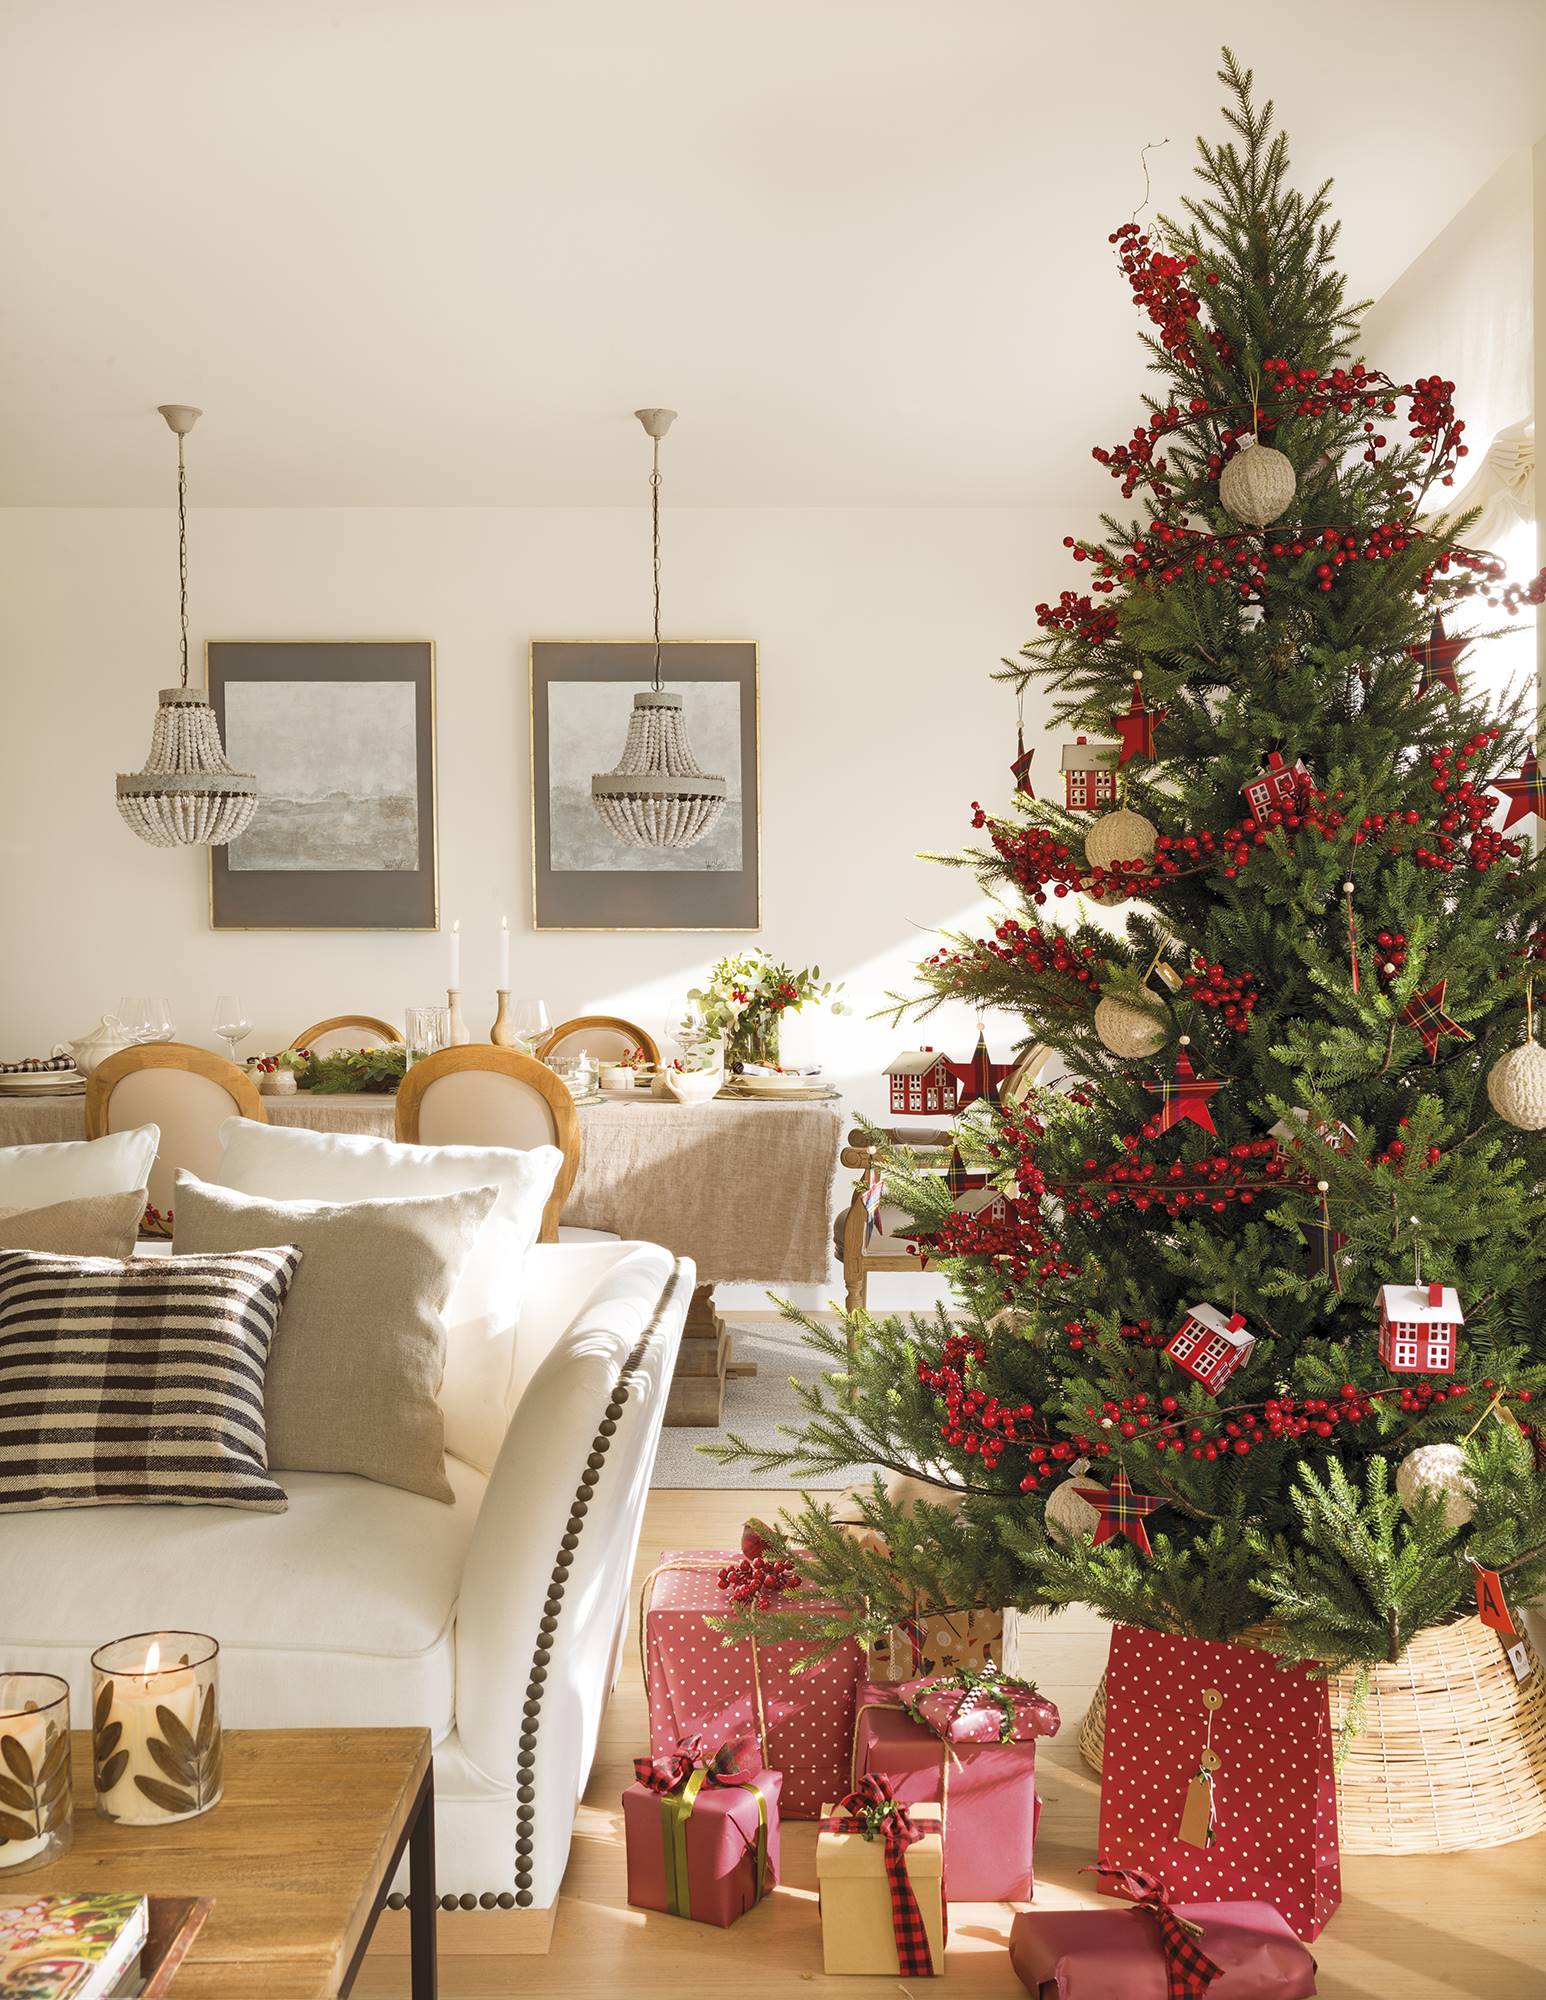 Salón comedor de Navidad con árbol vestido de rojo. 